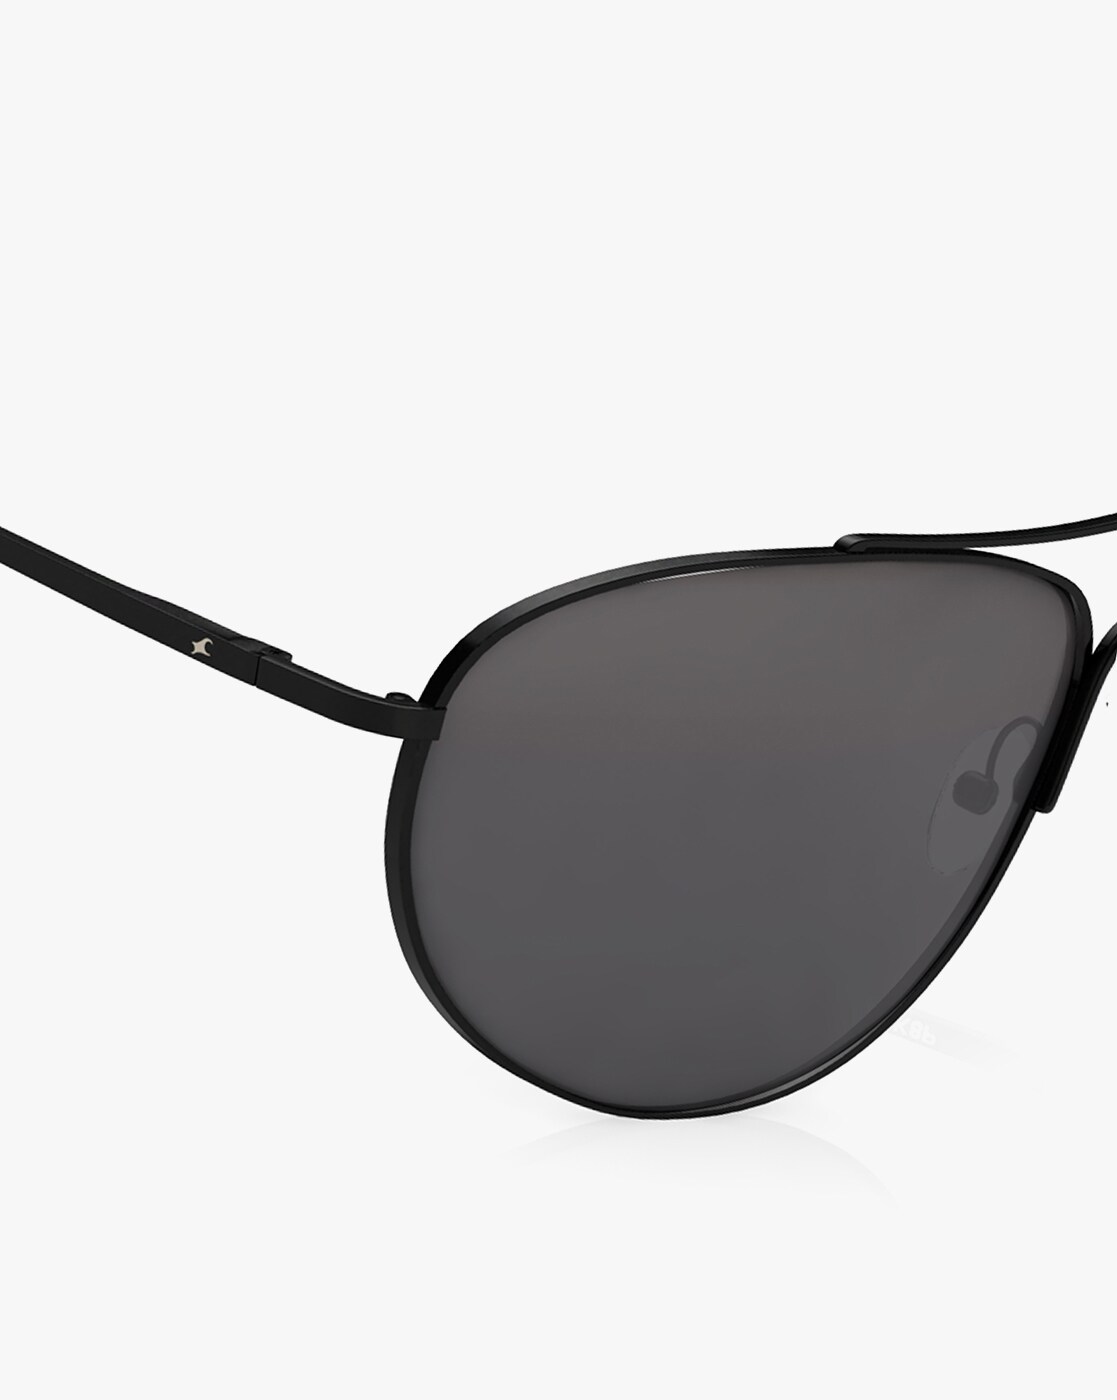 Buy fastrack Men Sunglasses [M068BK8P] Online - Best Price fastrack Men  Sunglasses [M068BK8P] - Justdial Shop Online.